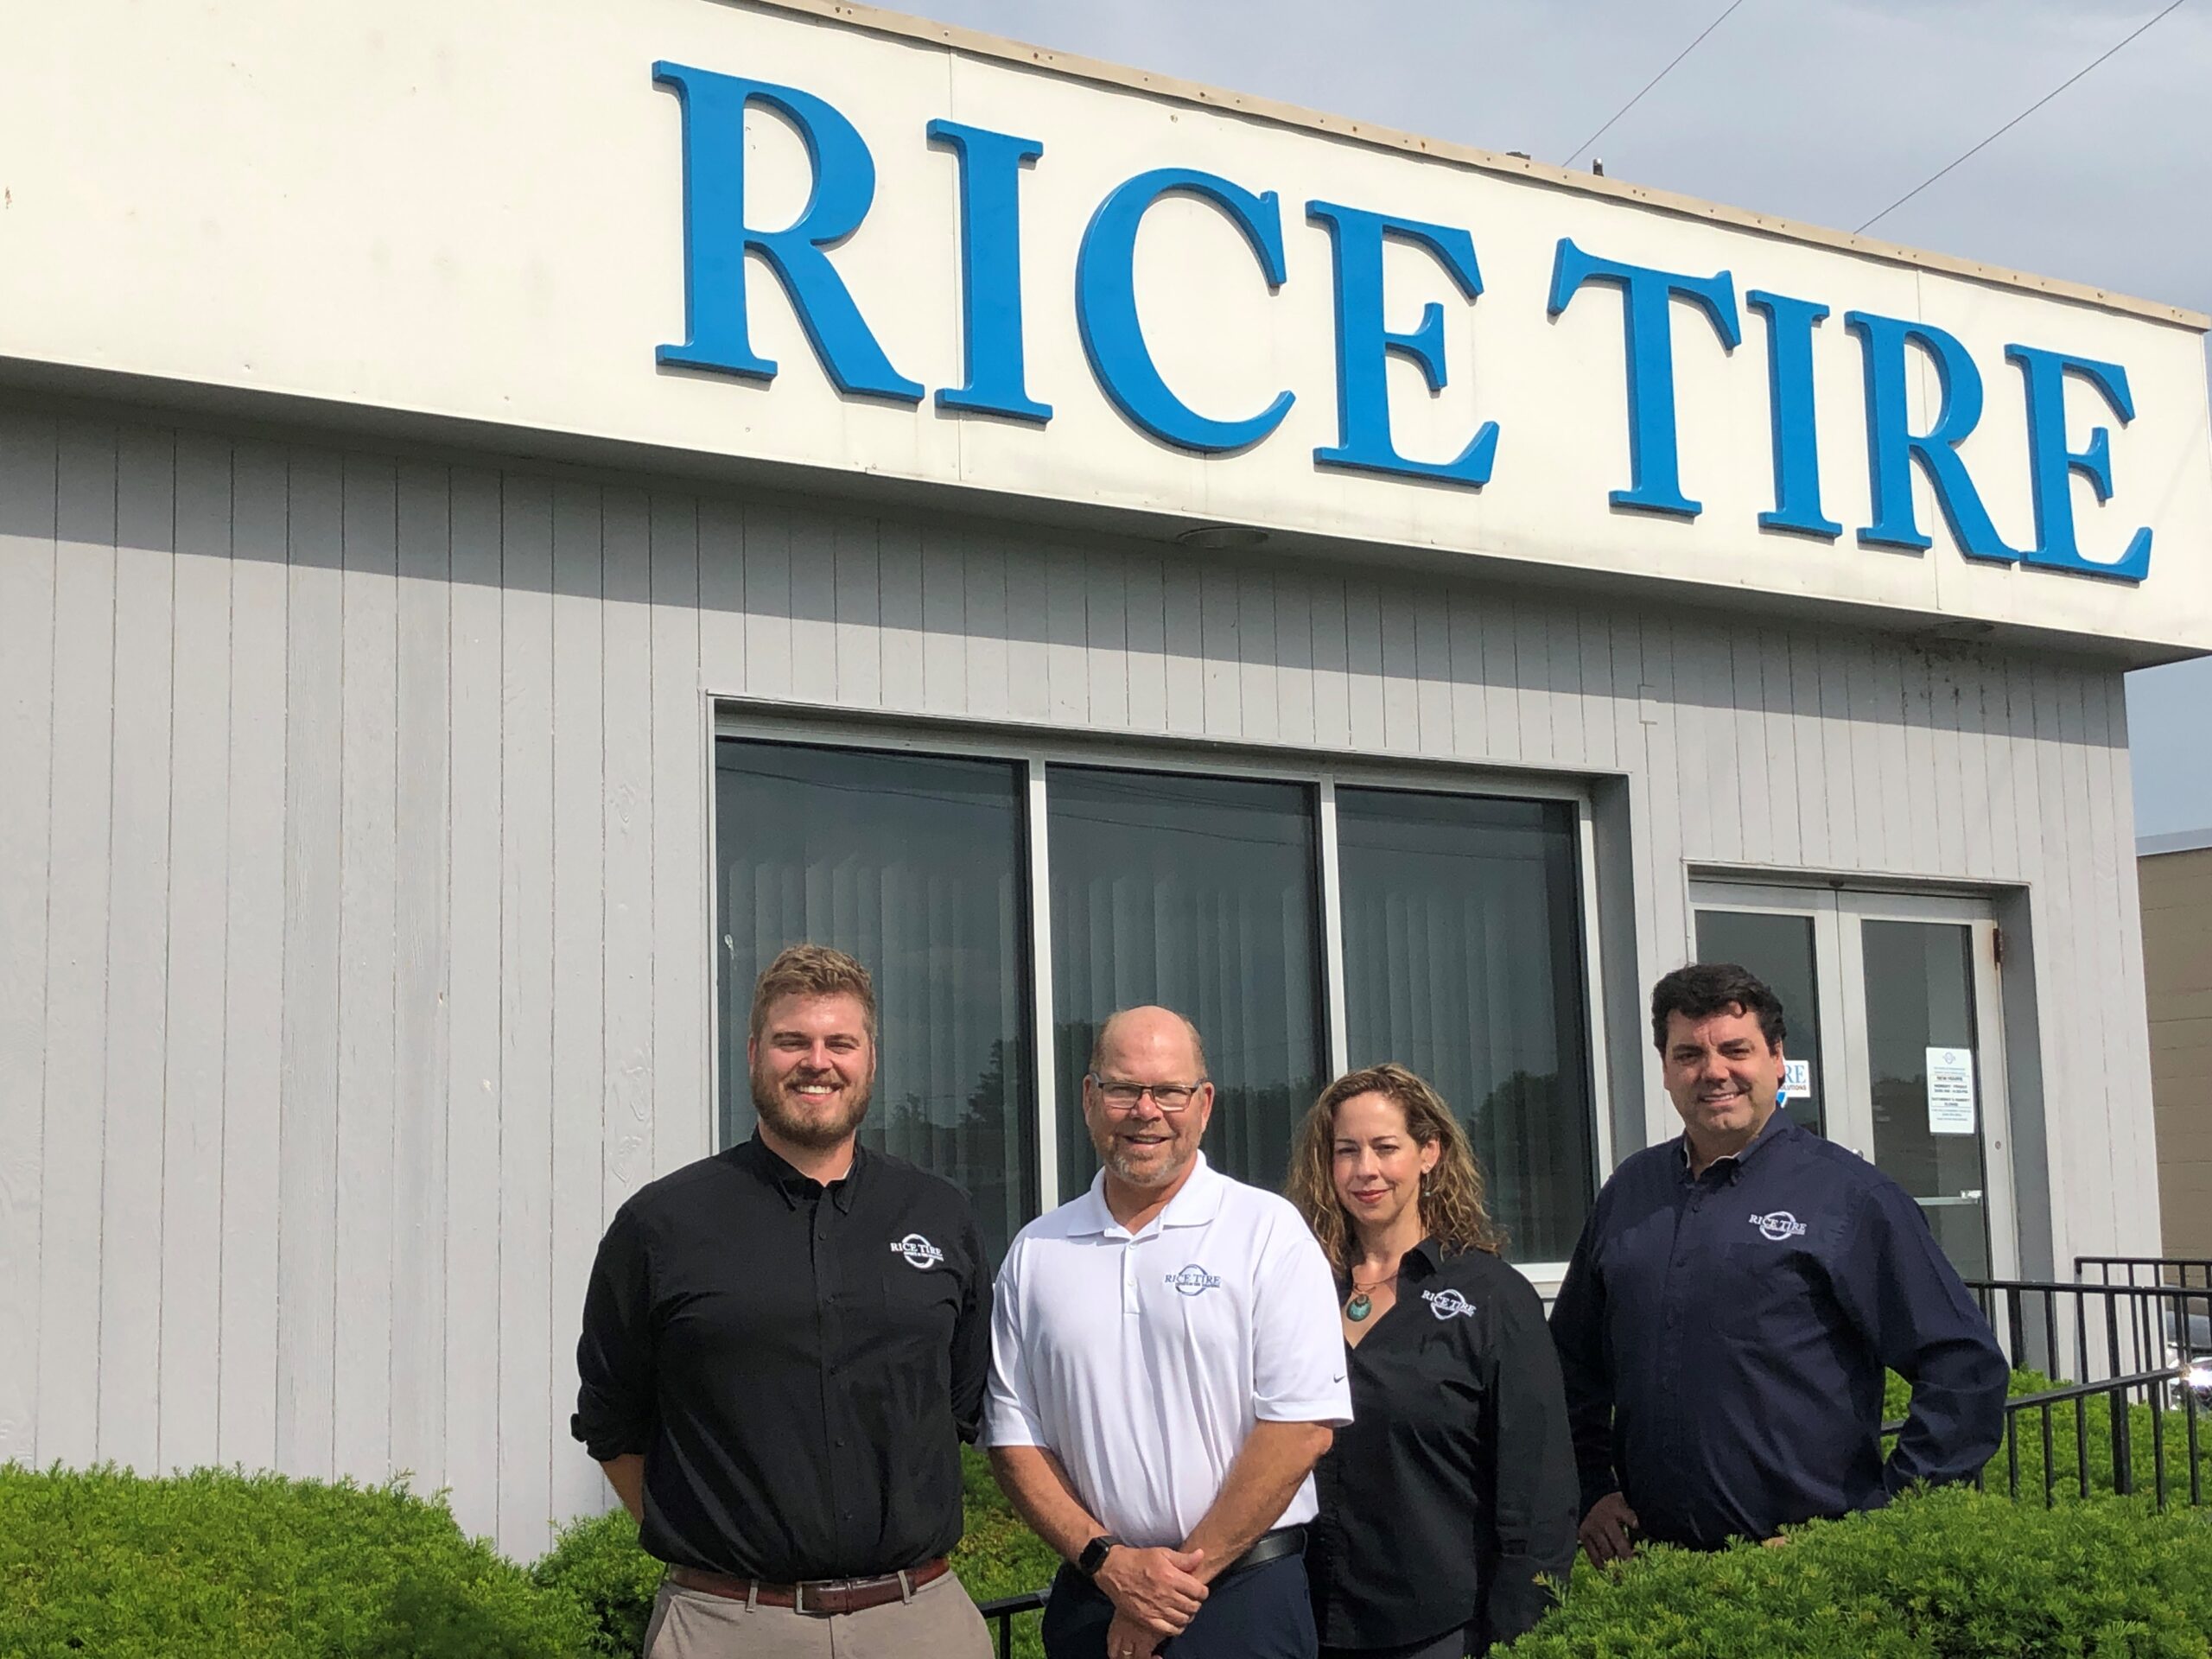 rice-tire-employee-hardship-fund-established-at-community-foundation